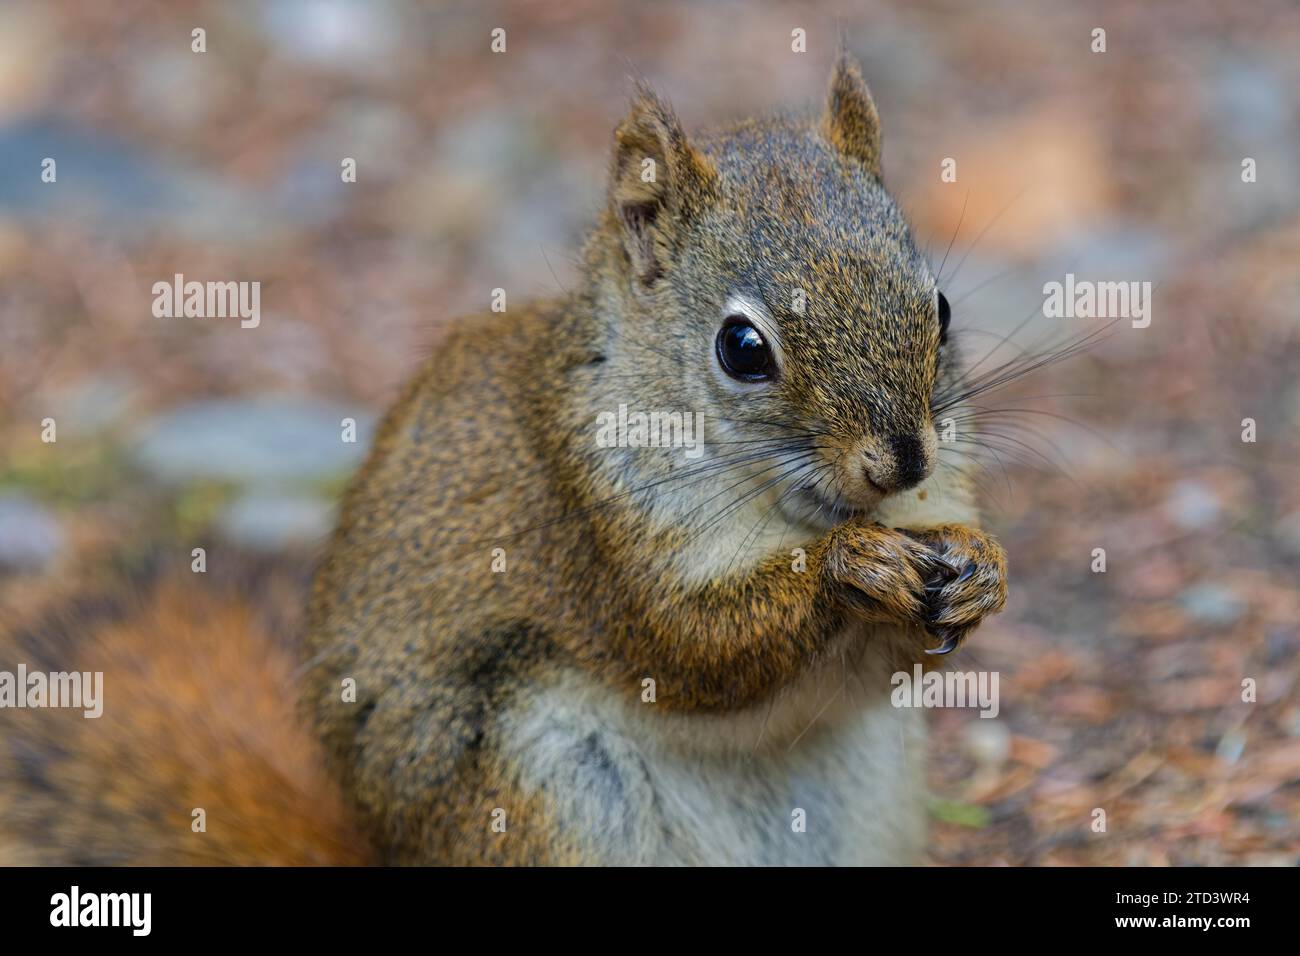 Common Canadian red squirrel (Tamiasciurus hudsonicus) close-up, feeding, Yukon Territory, Canada Stock Photo